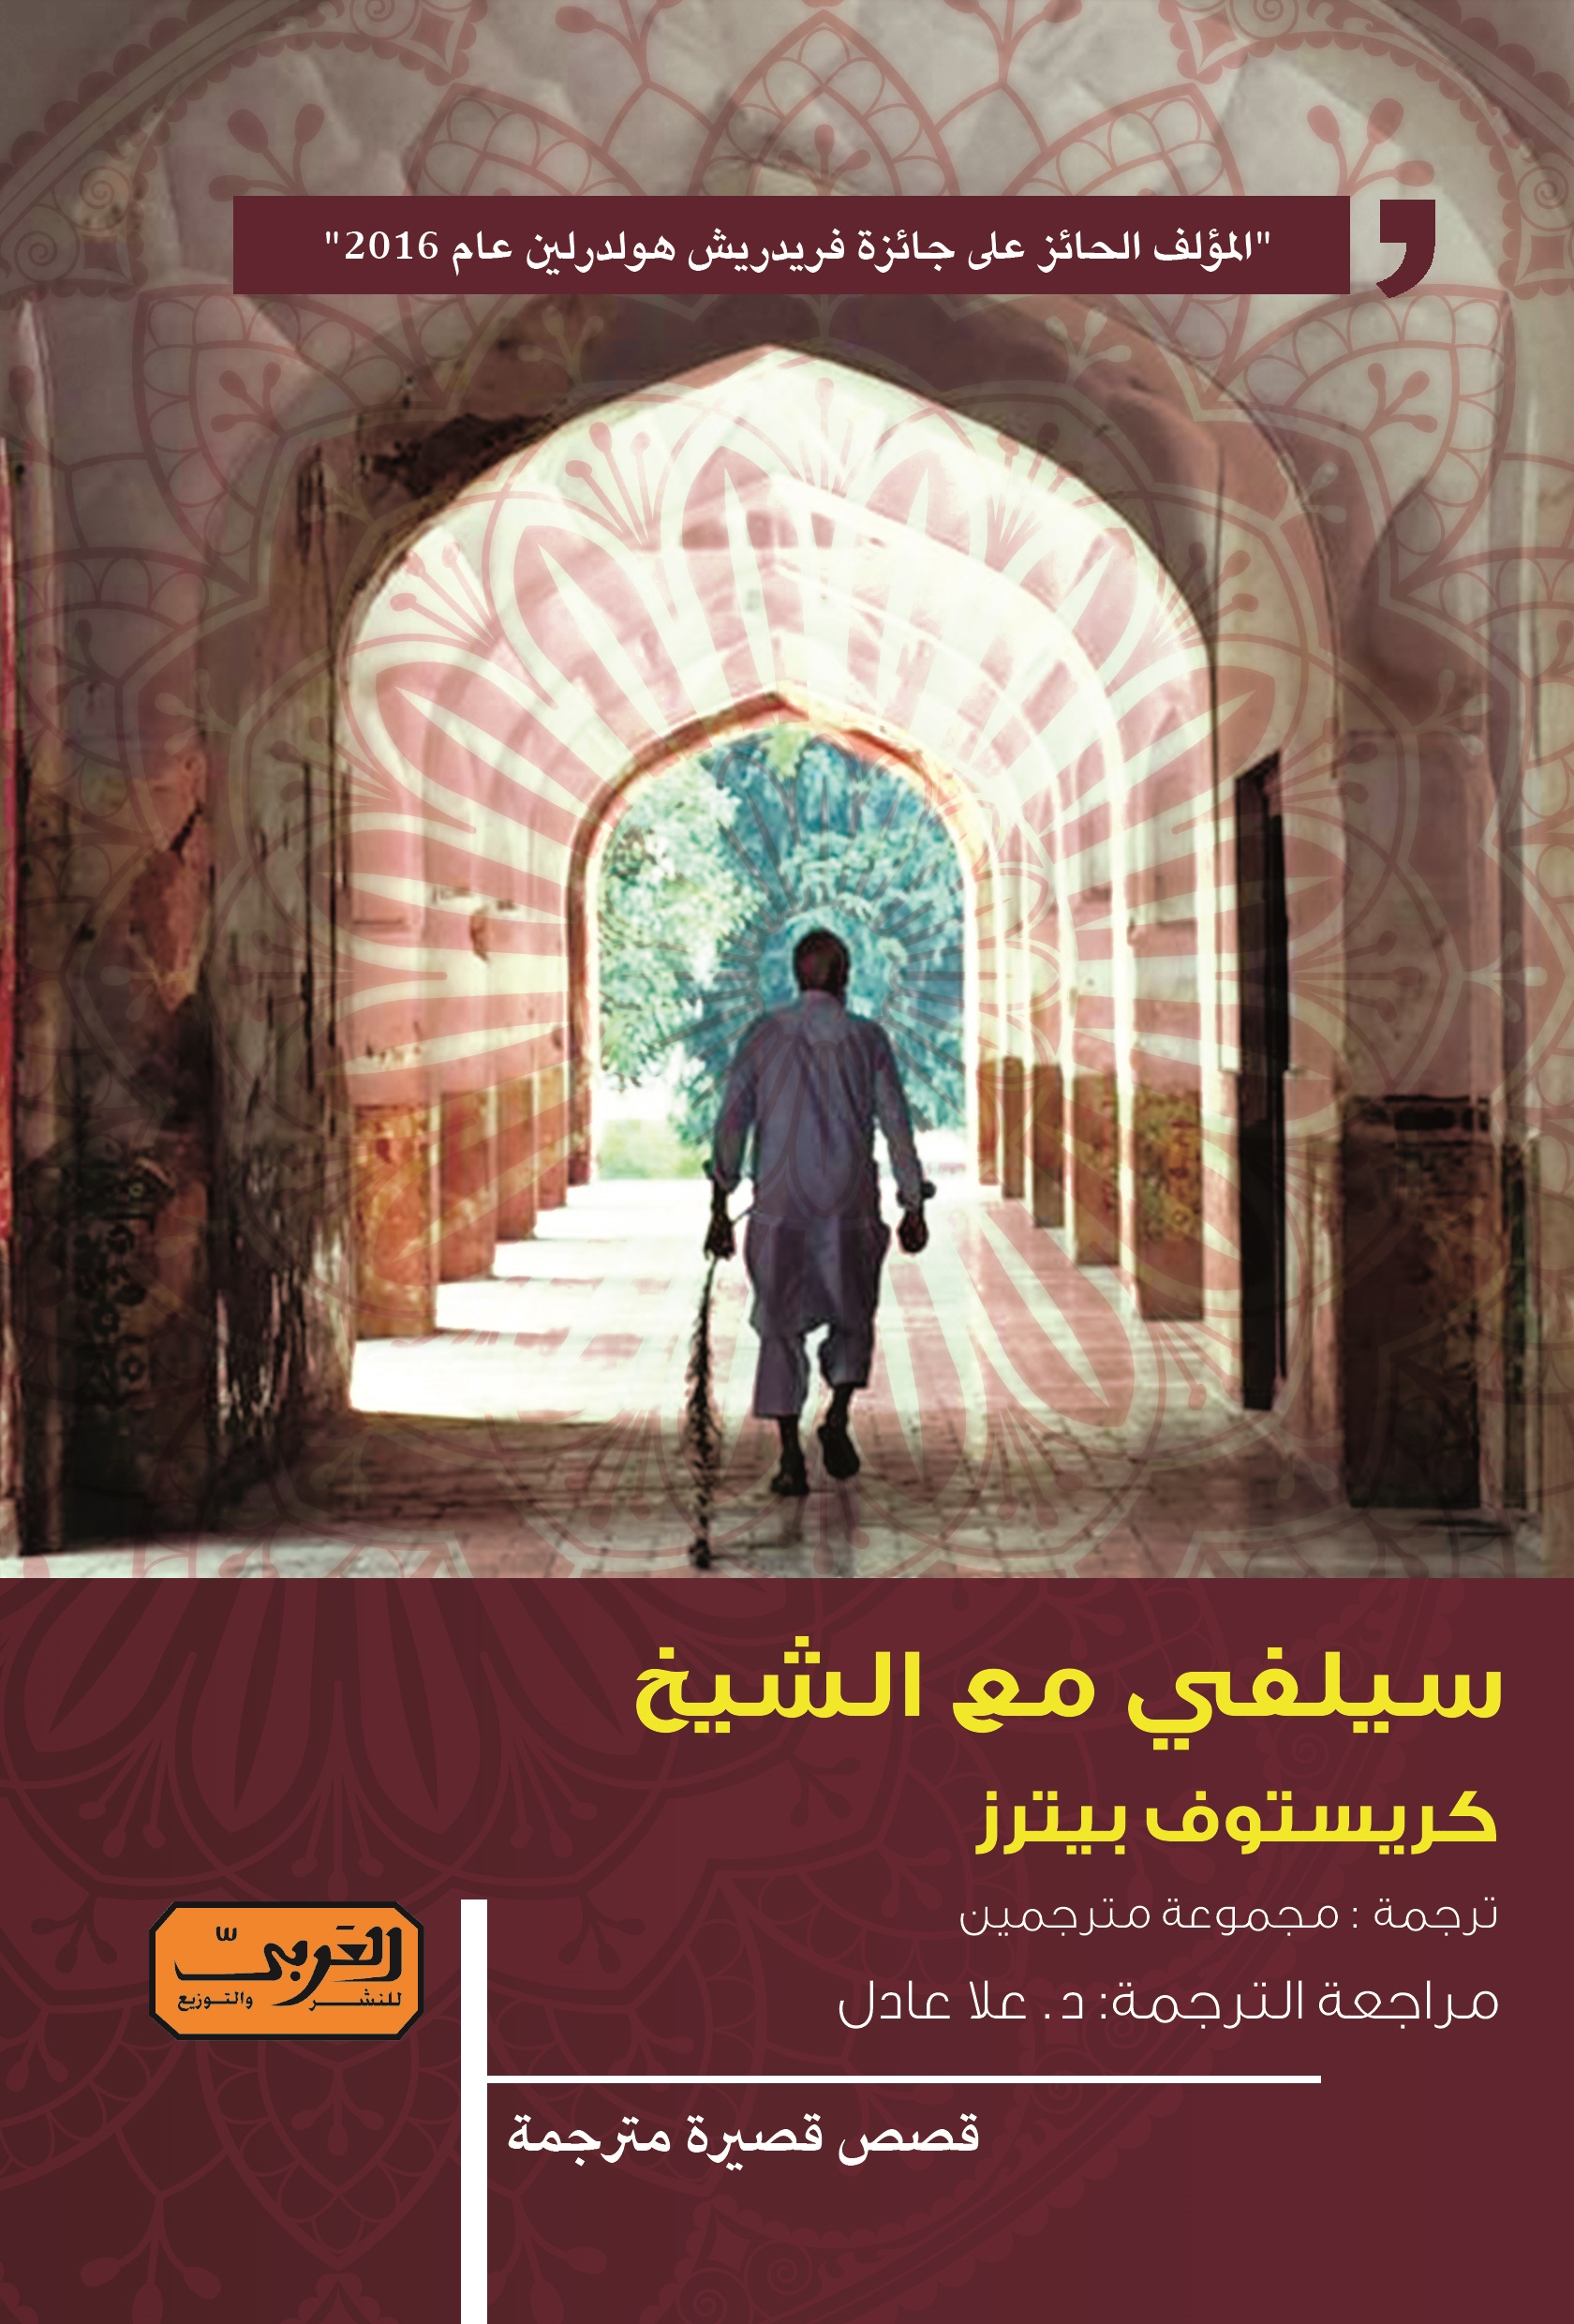 الغلاف العربي لكتاب "سيلفي مع الشيخ" للمؤلف الألماني كريستوف بيترز.